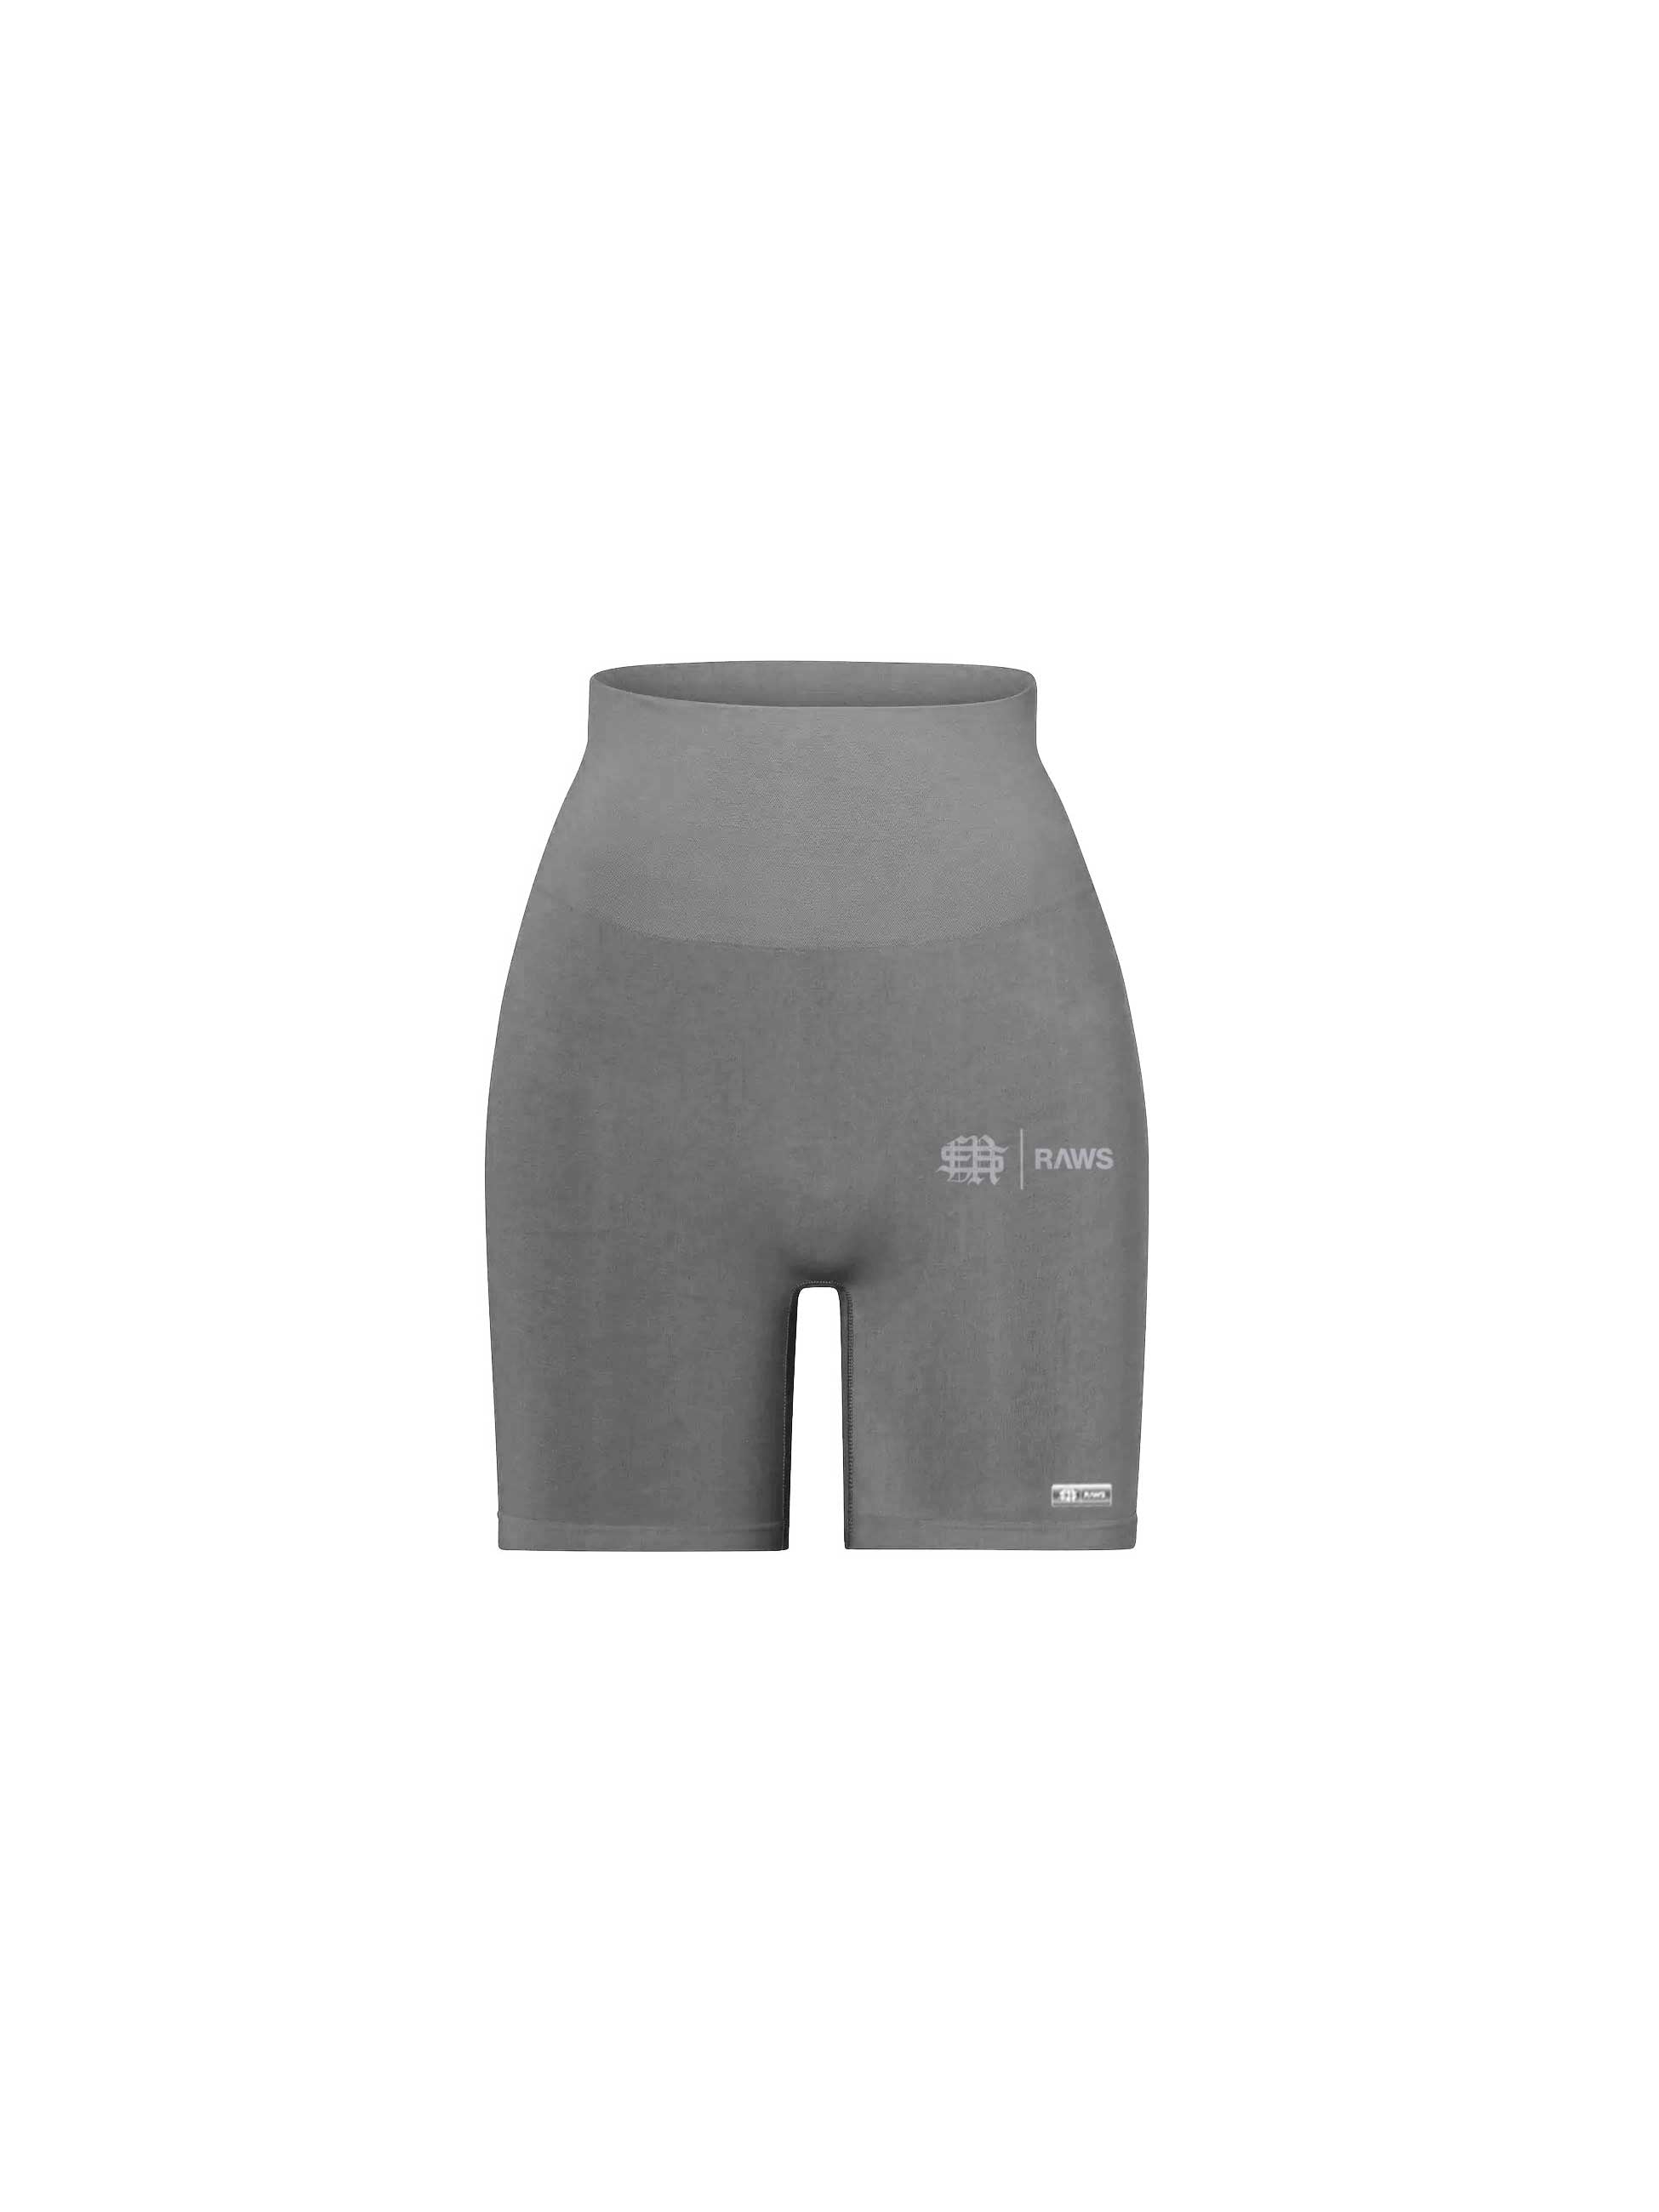 Sole et. Al RAWS Womens Training Shorts : Grey